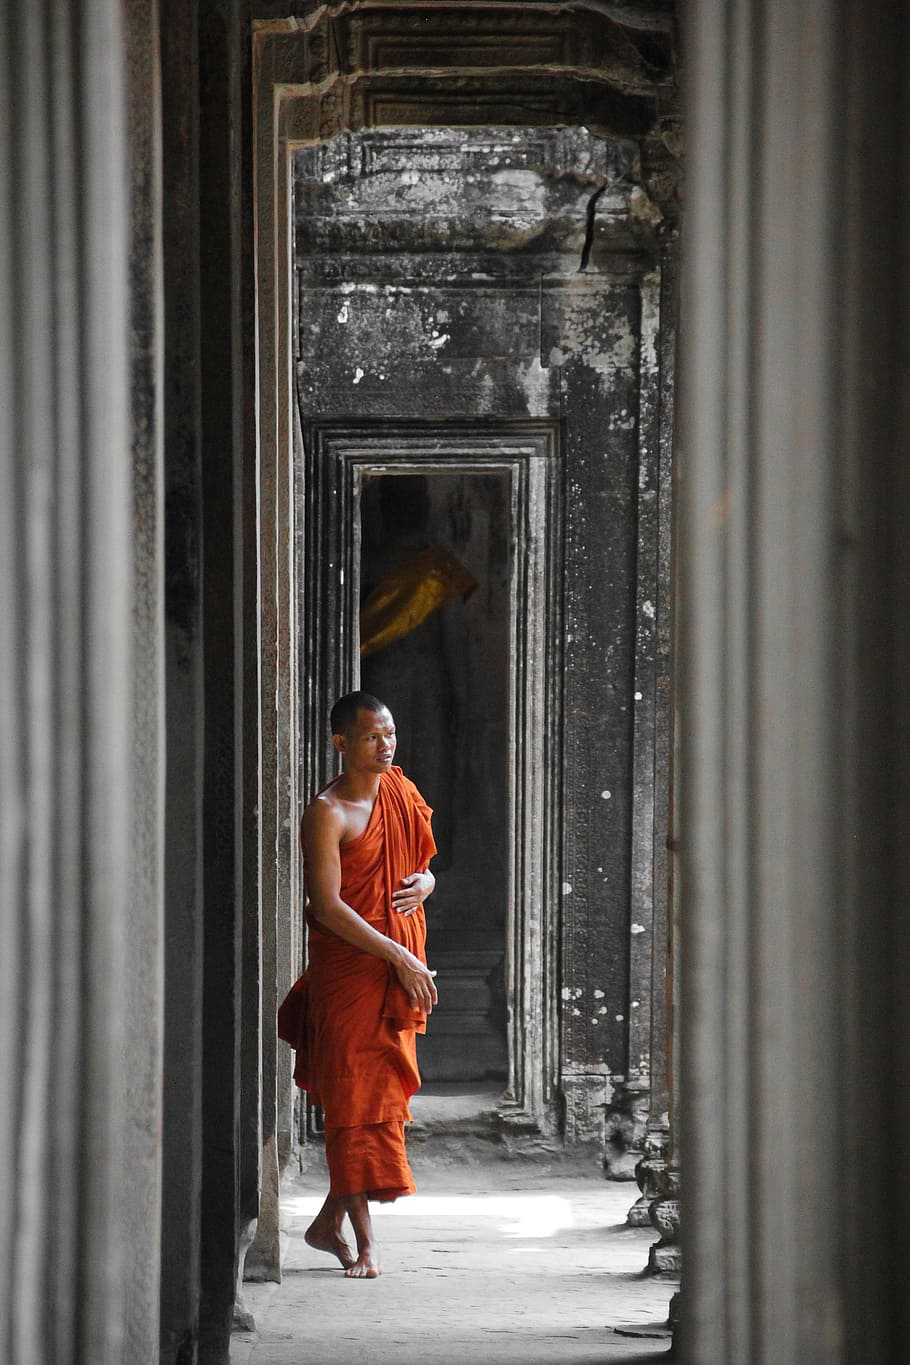 캄보디아, 수도사, 앙코르 와트, 아시아, 앙코르, 종교, 신전, 프놈펜, 건축물, 전체 길이